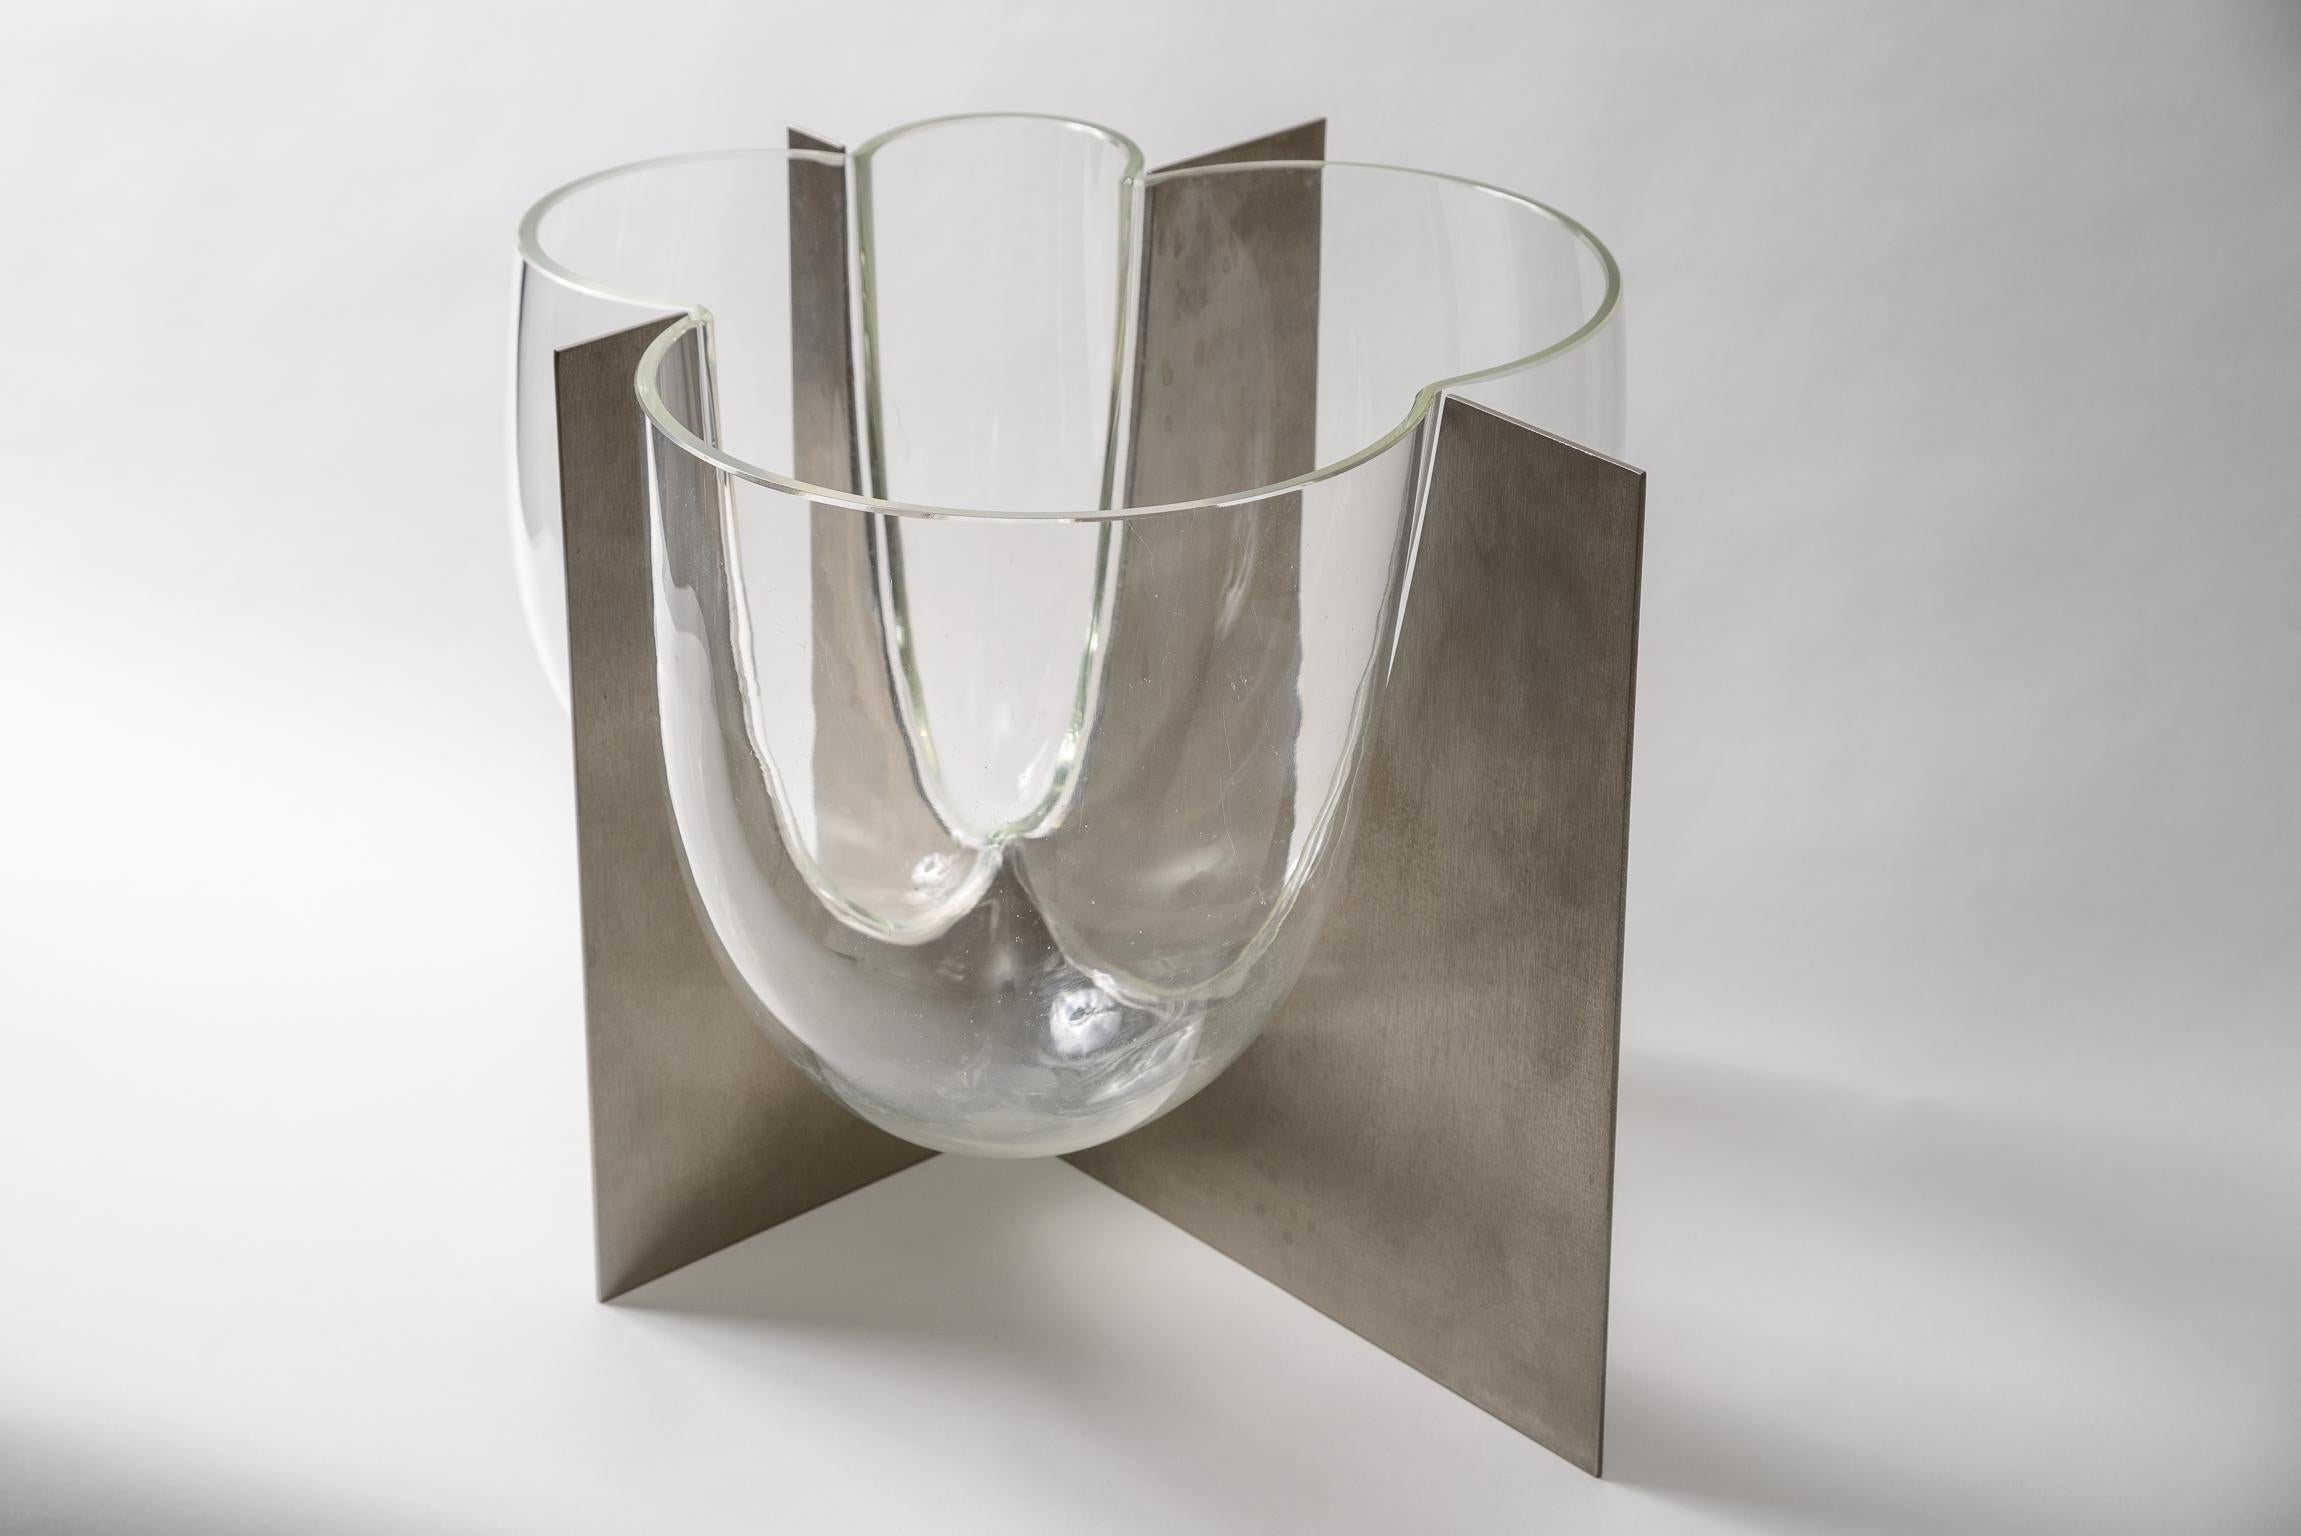 Carlo Nason Vase aus poliertem Aluminium und geblasenem Glas
Eine Ikone des Designs der 1970er Jahre